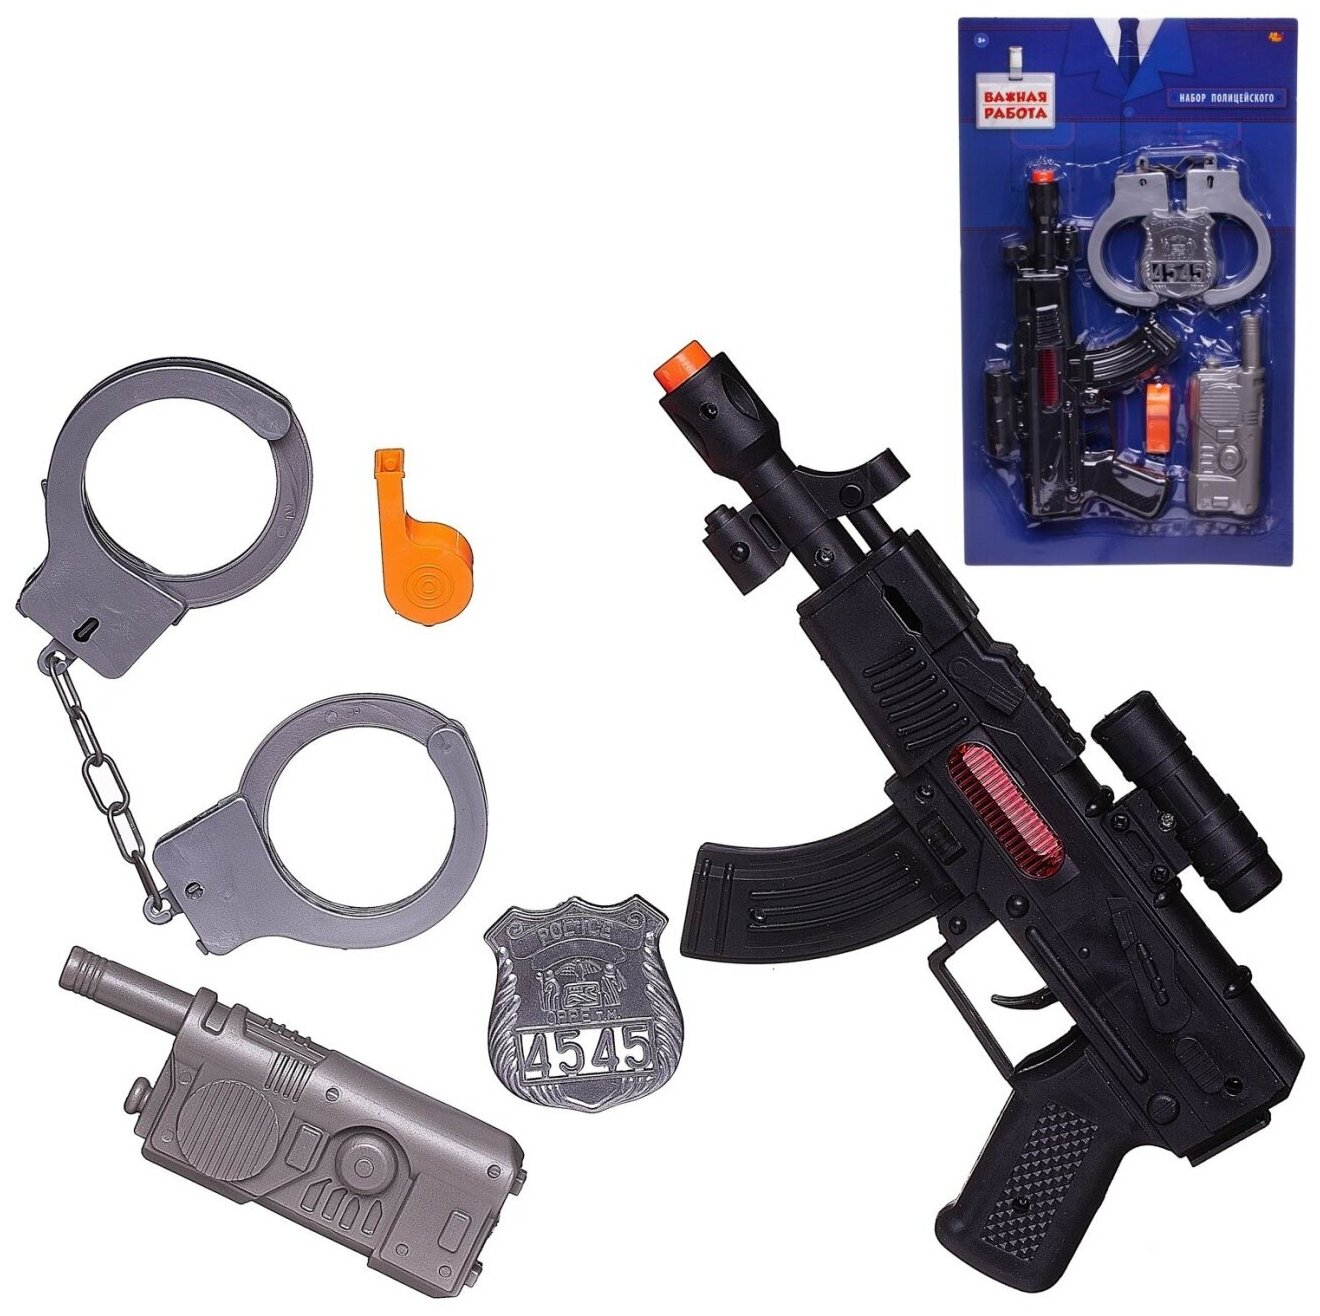 Игровой набор полицейского Abtoys Важная работа Автомат, рация, свисток, жетон и наручники PT-01791